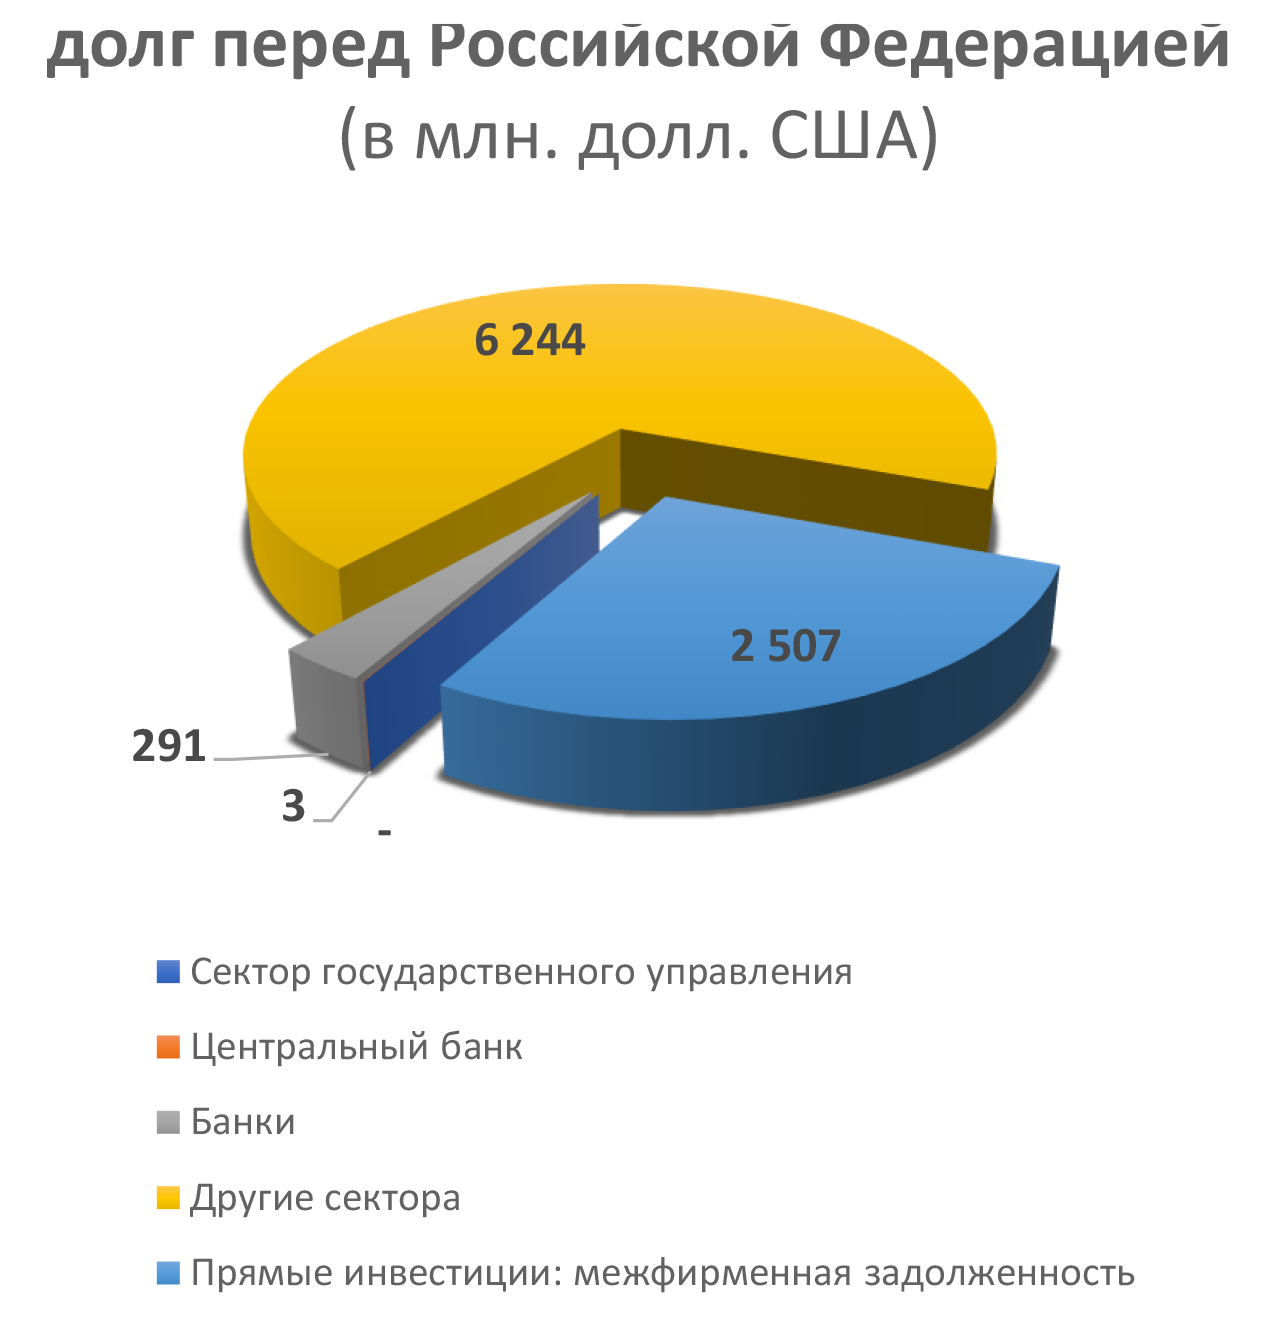 долг перед Российской Федерацией (в млн. долл. США)